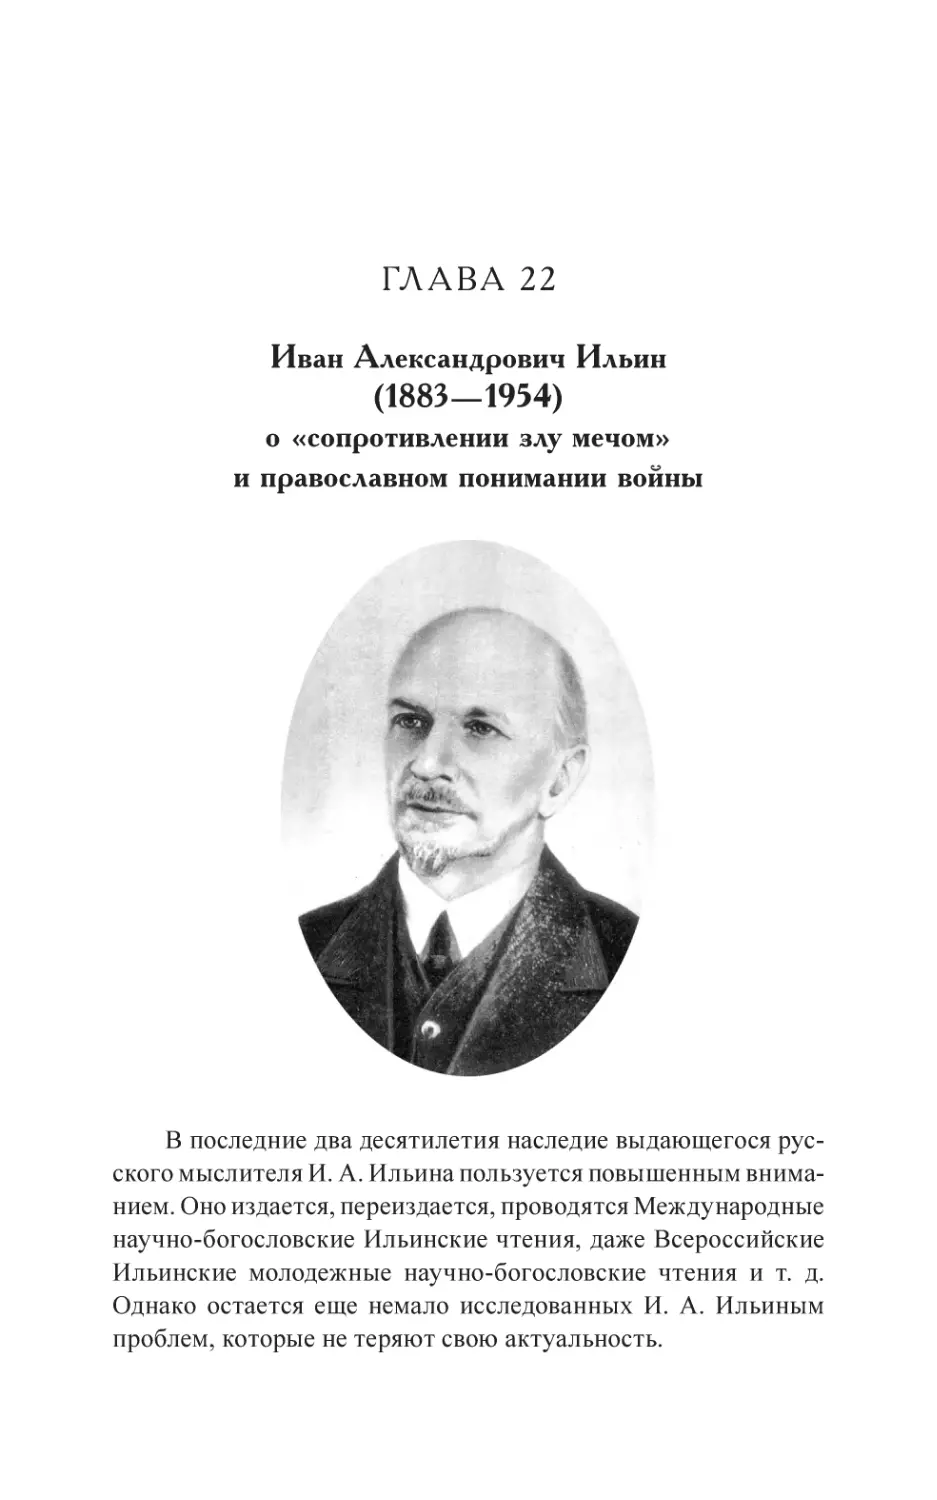 Глава 22
Иван Александрович Ильин (1883—1954) о «сопротивлении злу мечом» и православном понимании войны